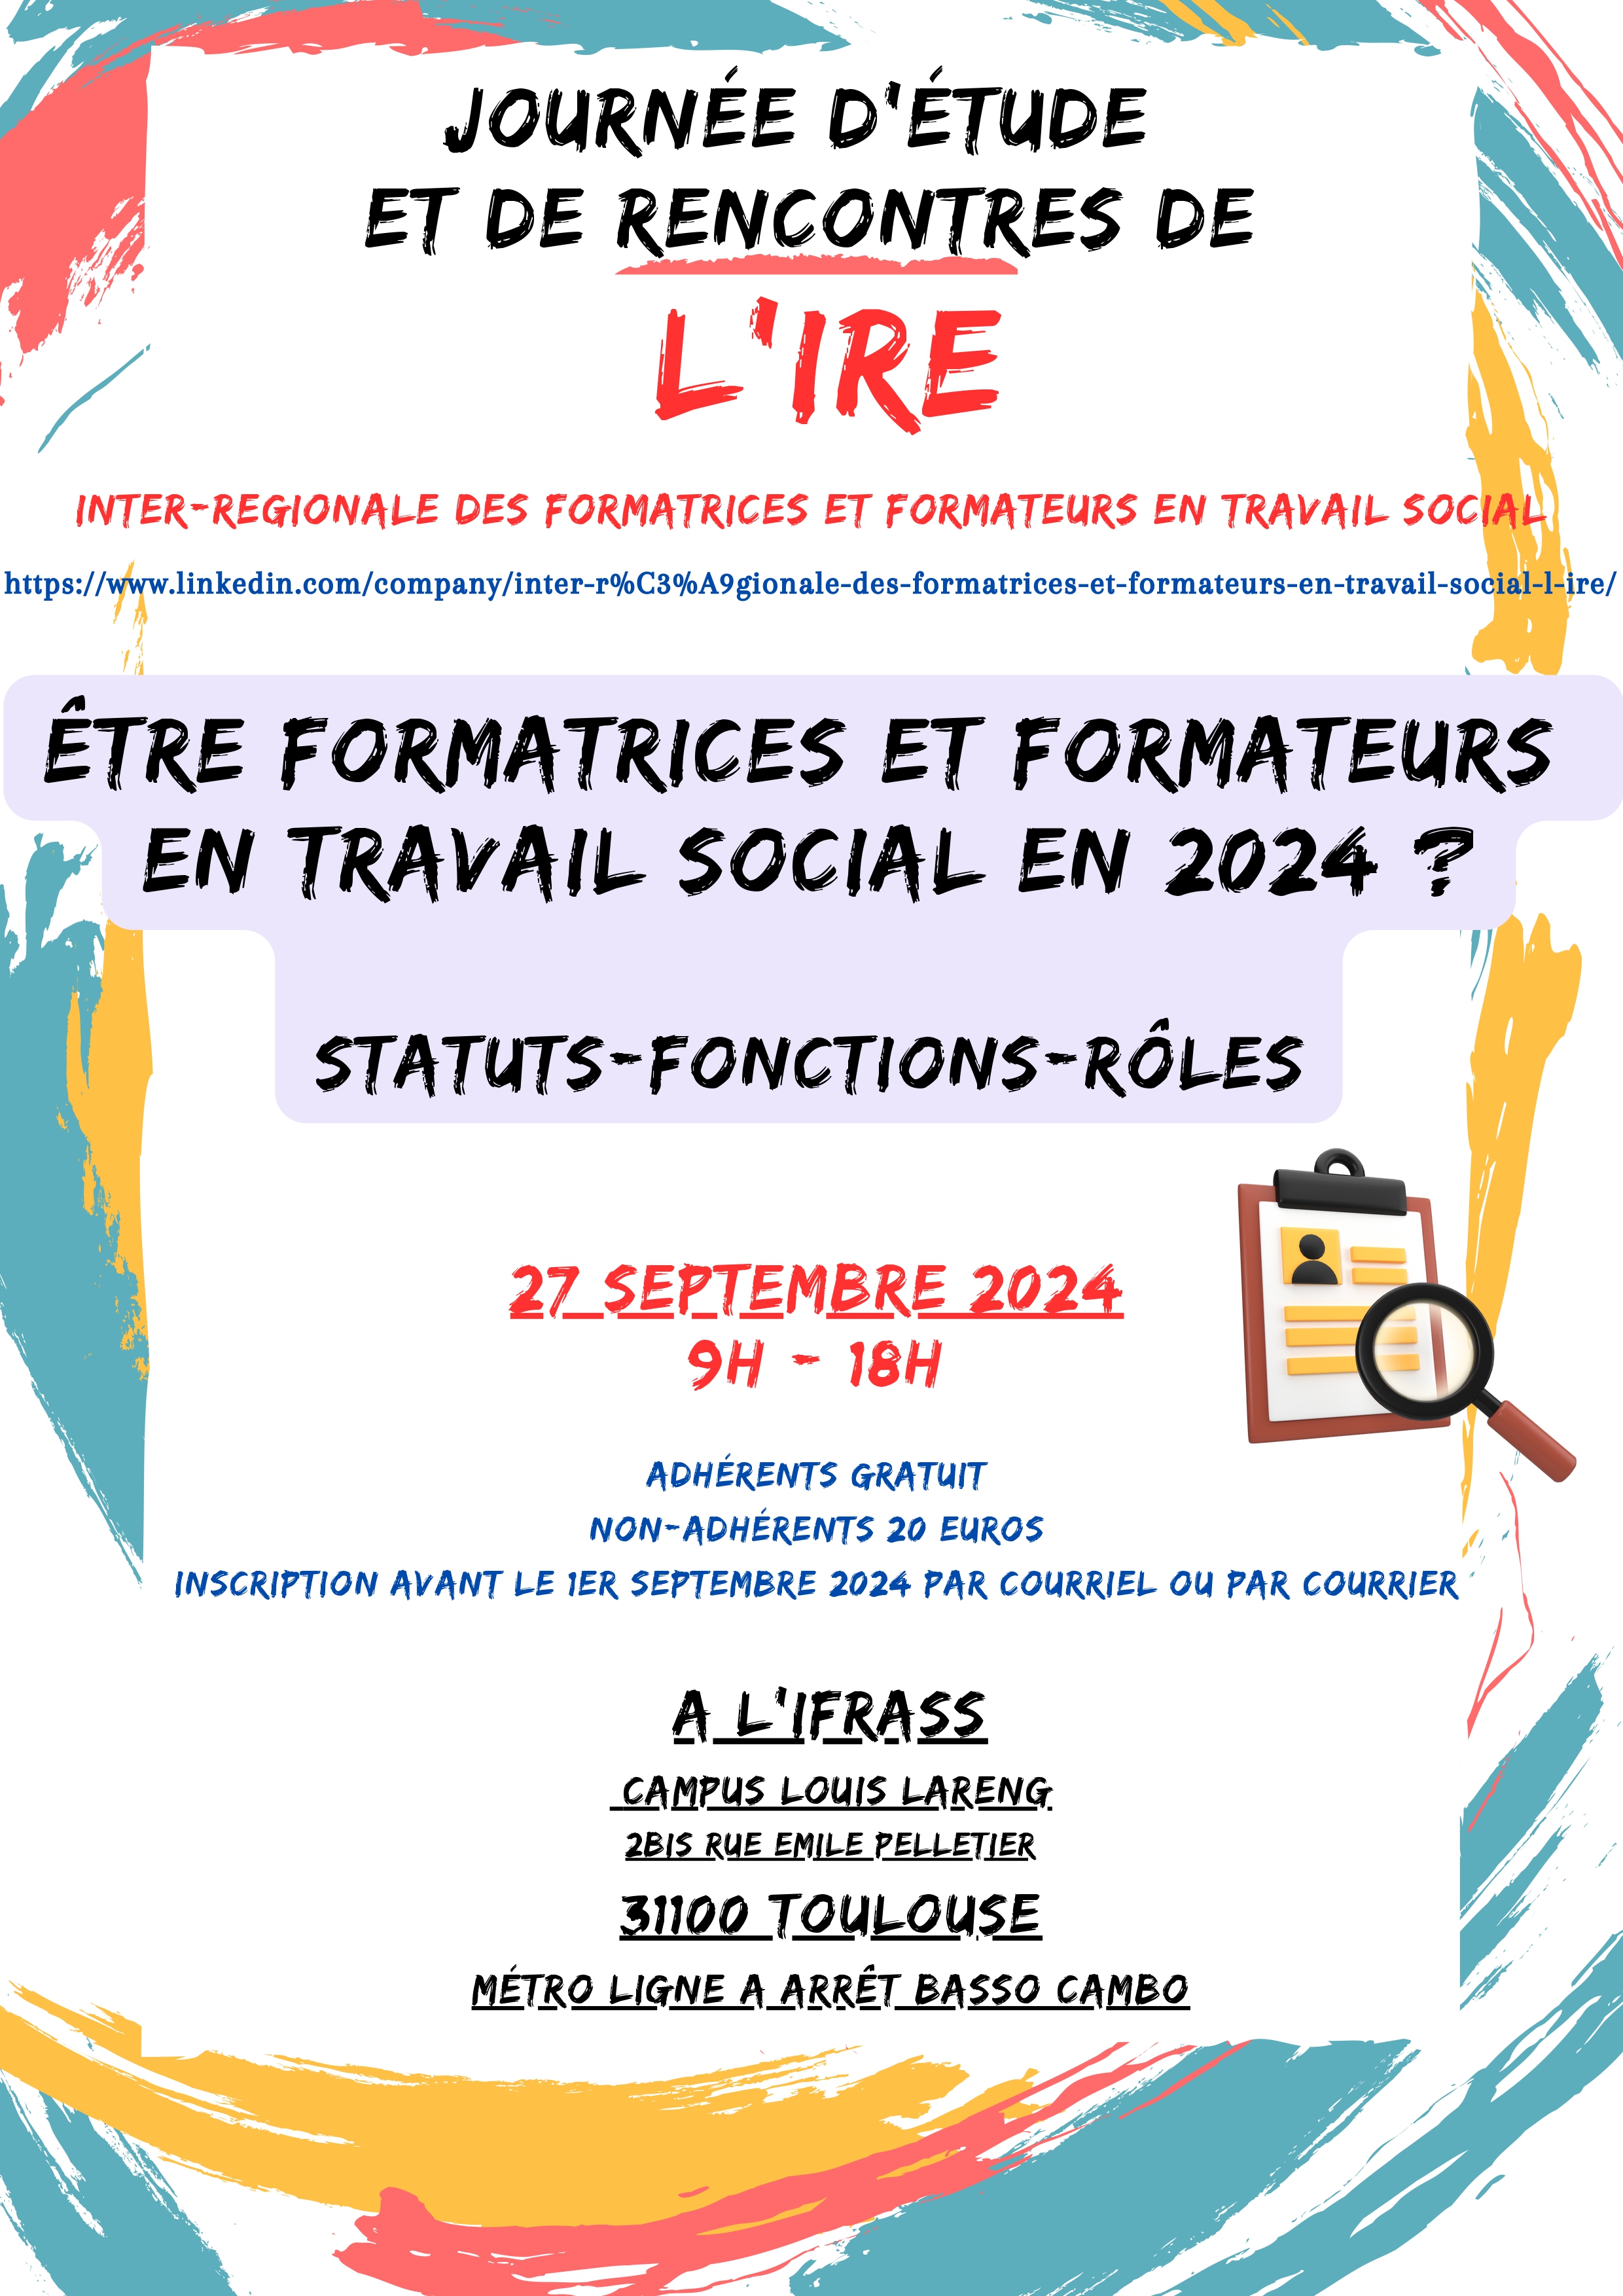 Journée d'étude et de rencontres de l'IRE 27 septembre 2024 à l'IFRASS - Toulouse